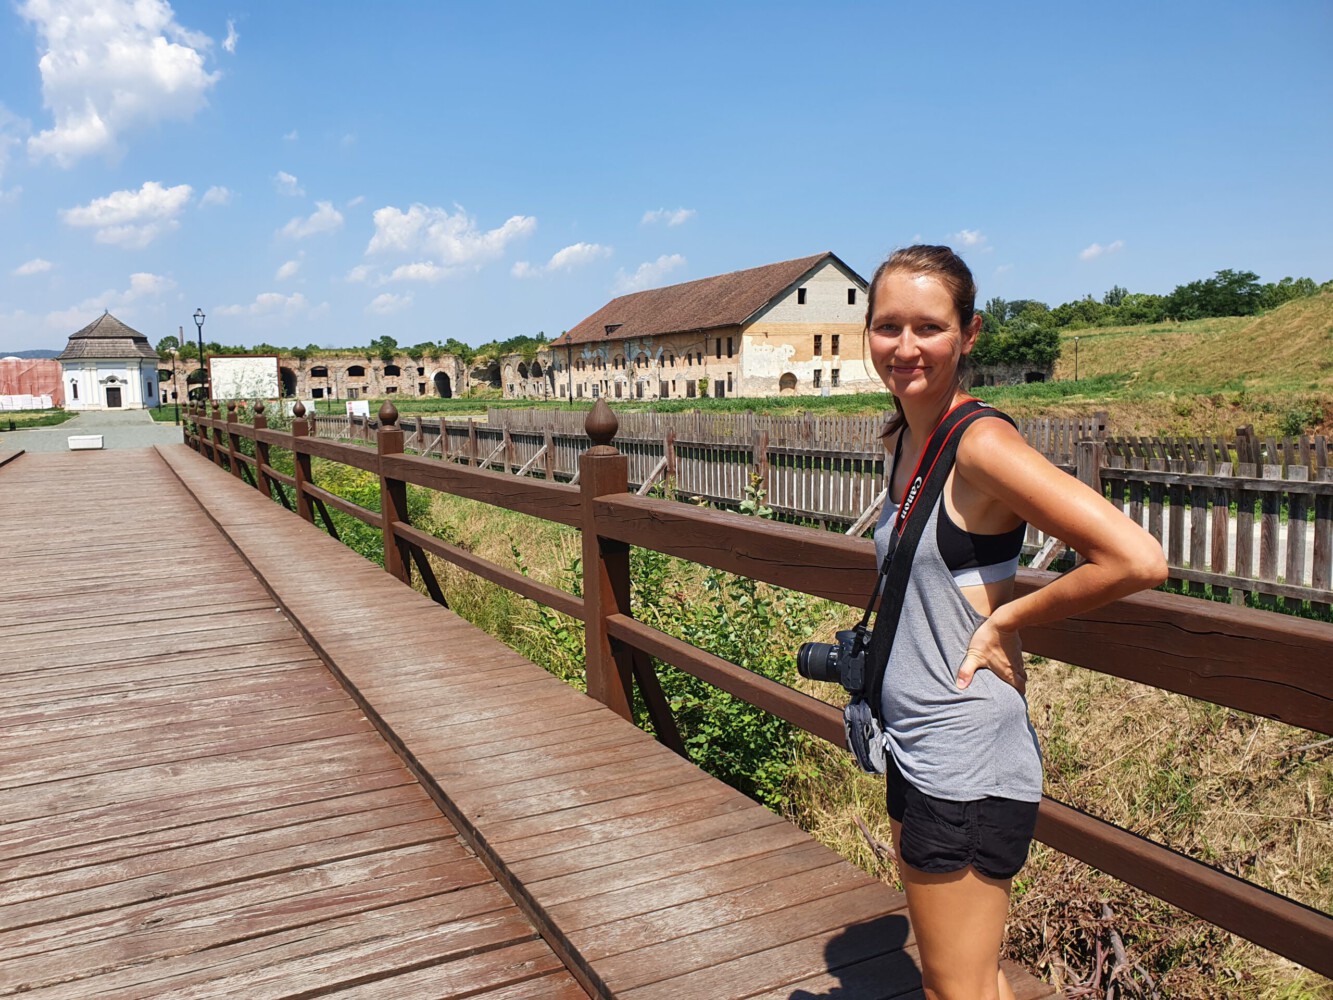 Alina at the fortress in Slavonski Brod.